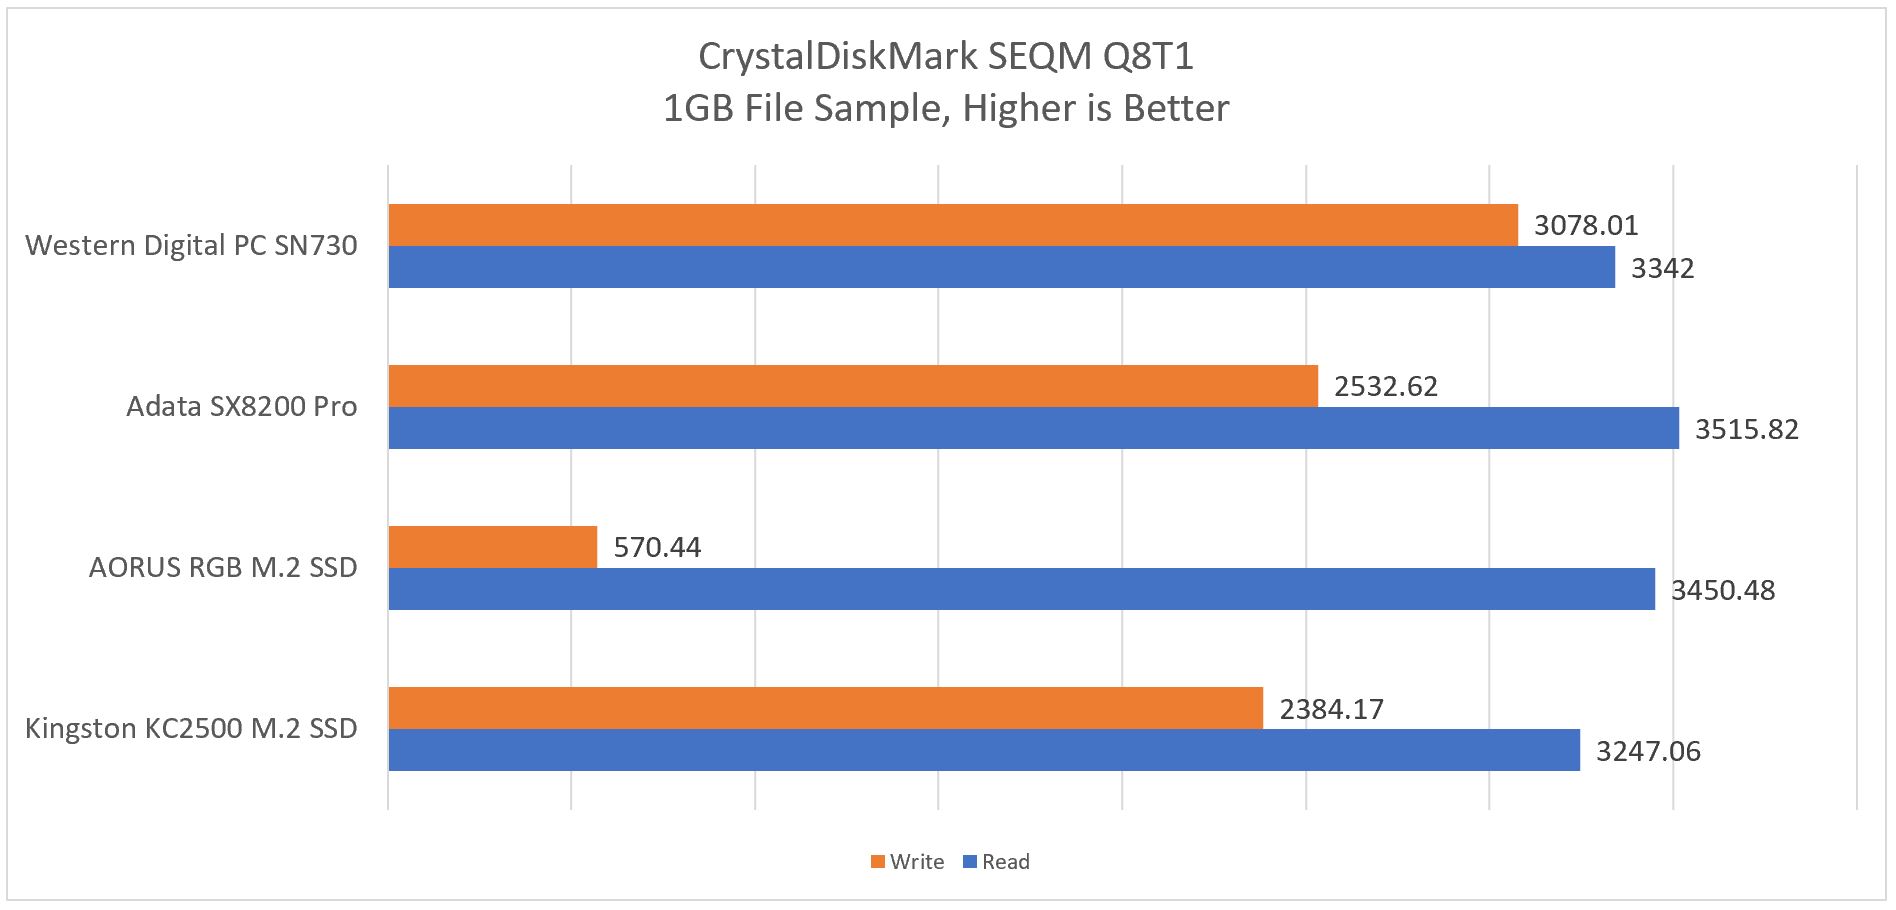 CDM - SEQM Q8T1 1GB